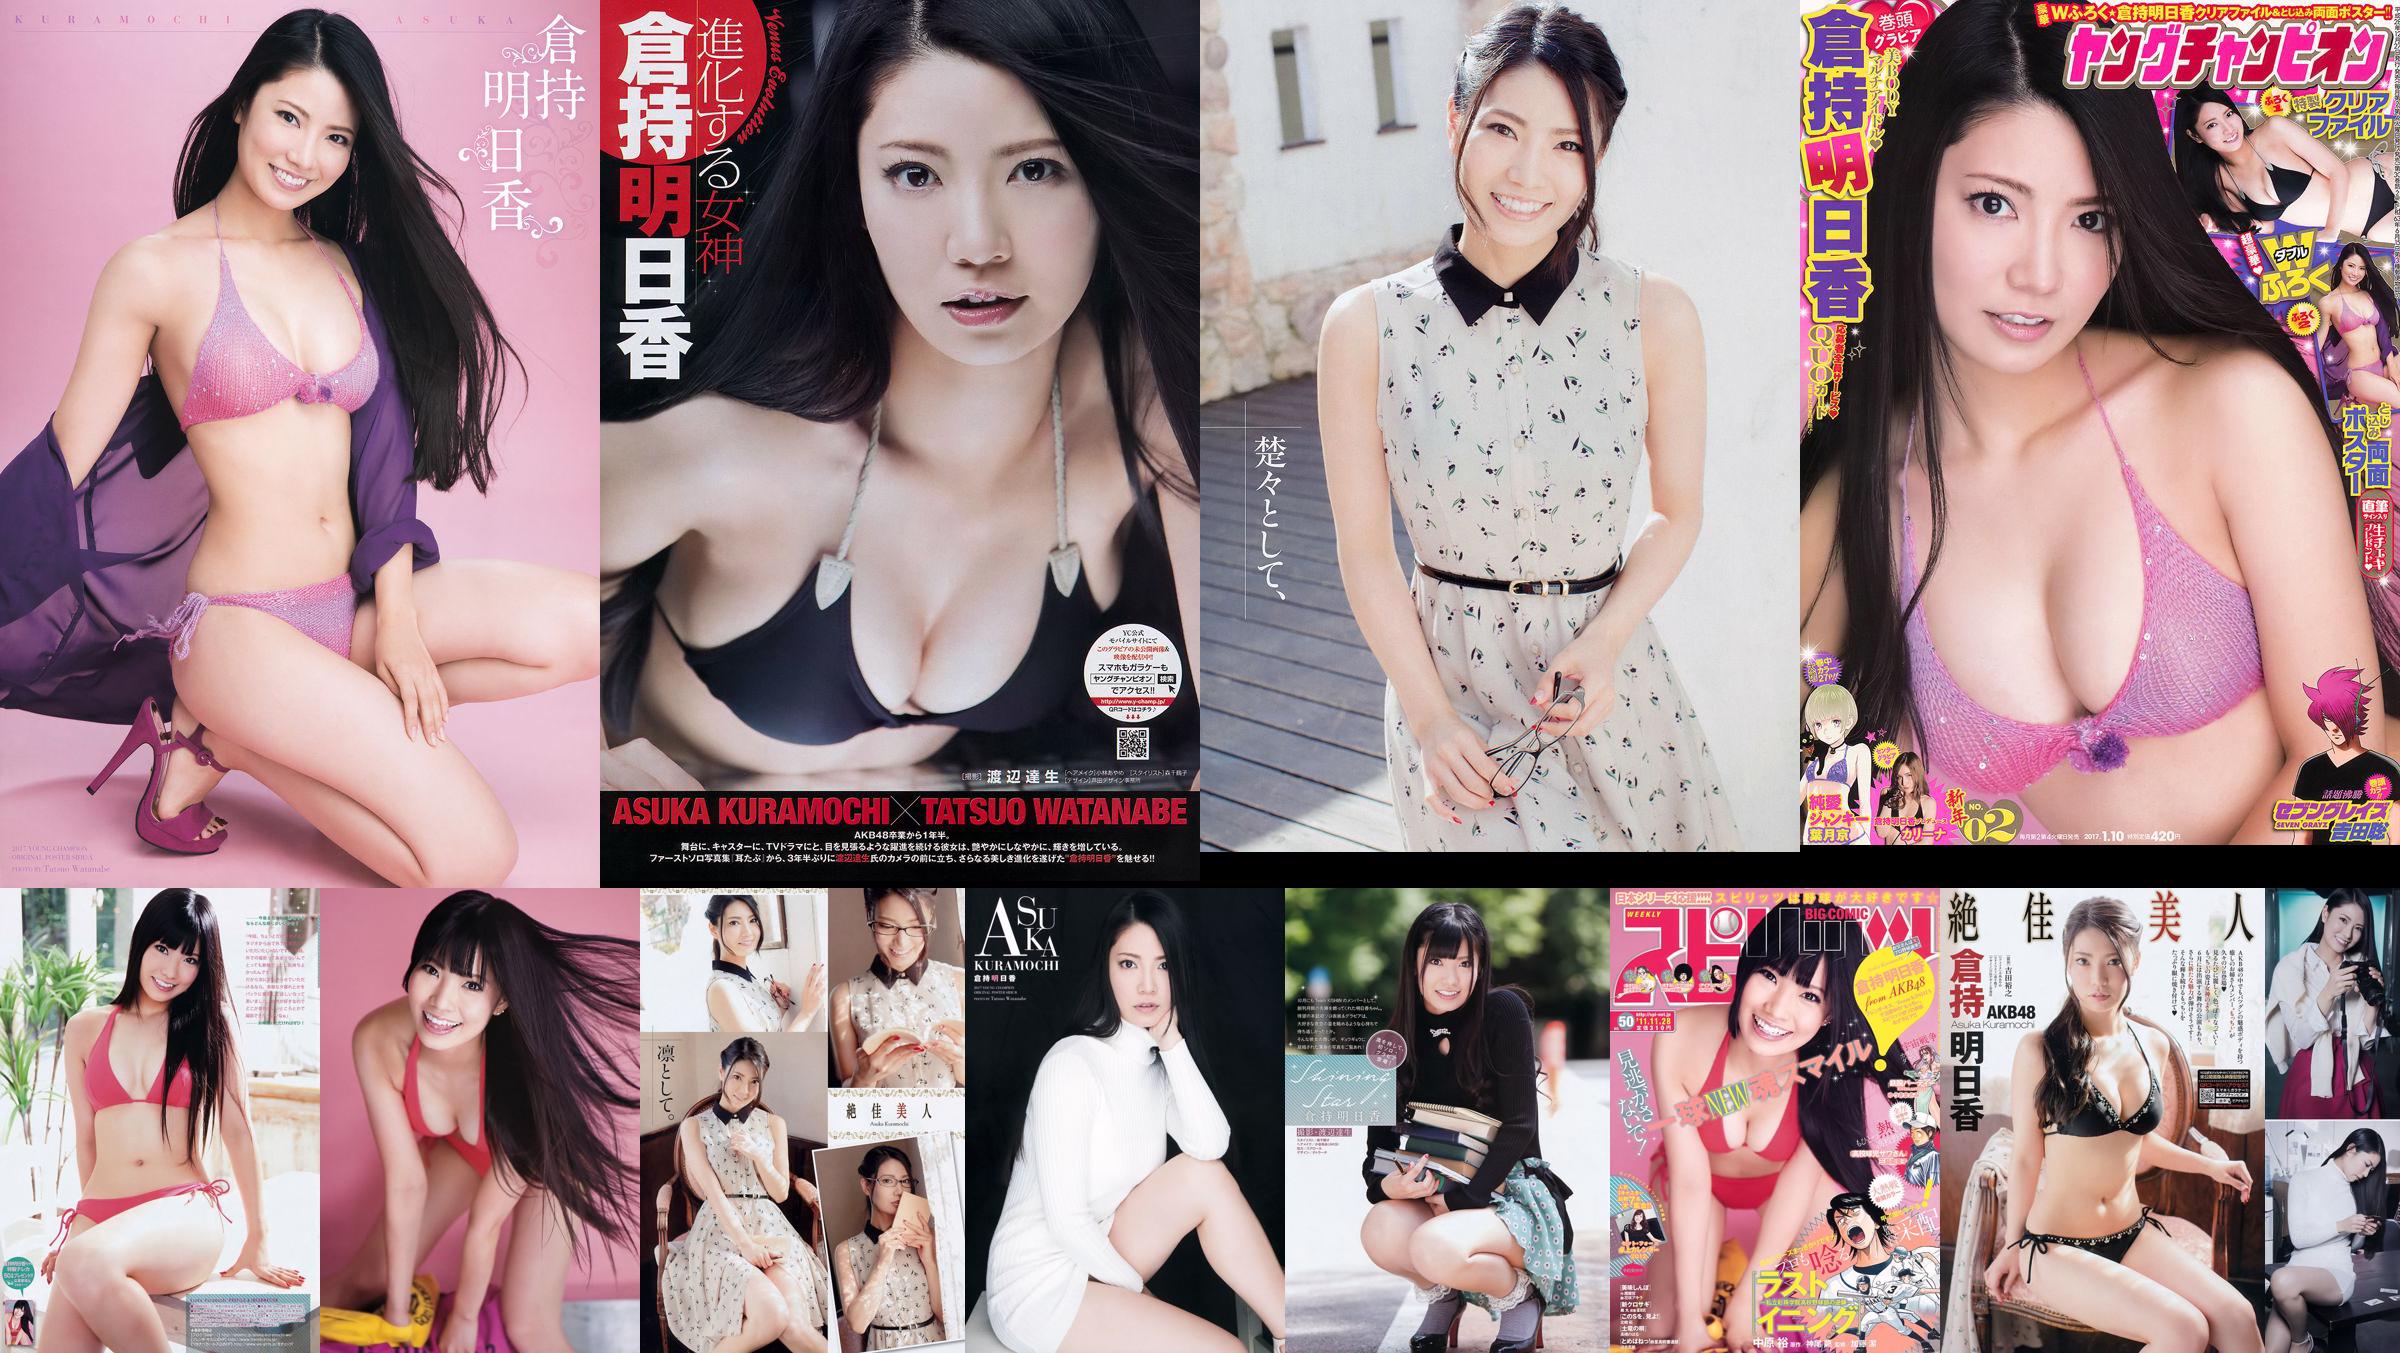 [Young Champion] Asuka Kuramochi 2015 No.09 Photo Magazine No.e3a8c5 Pagina 1